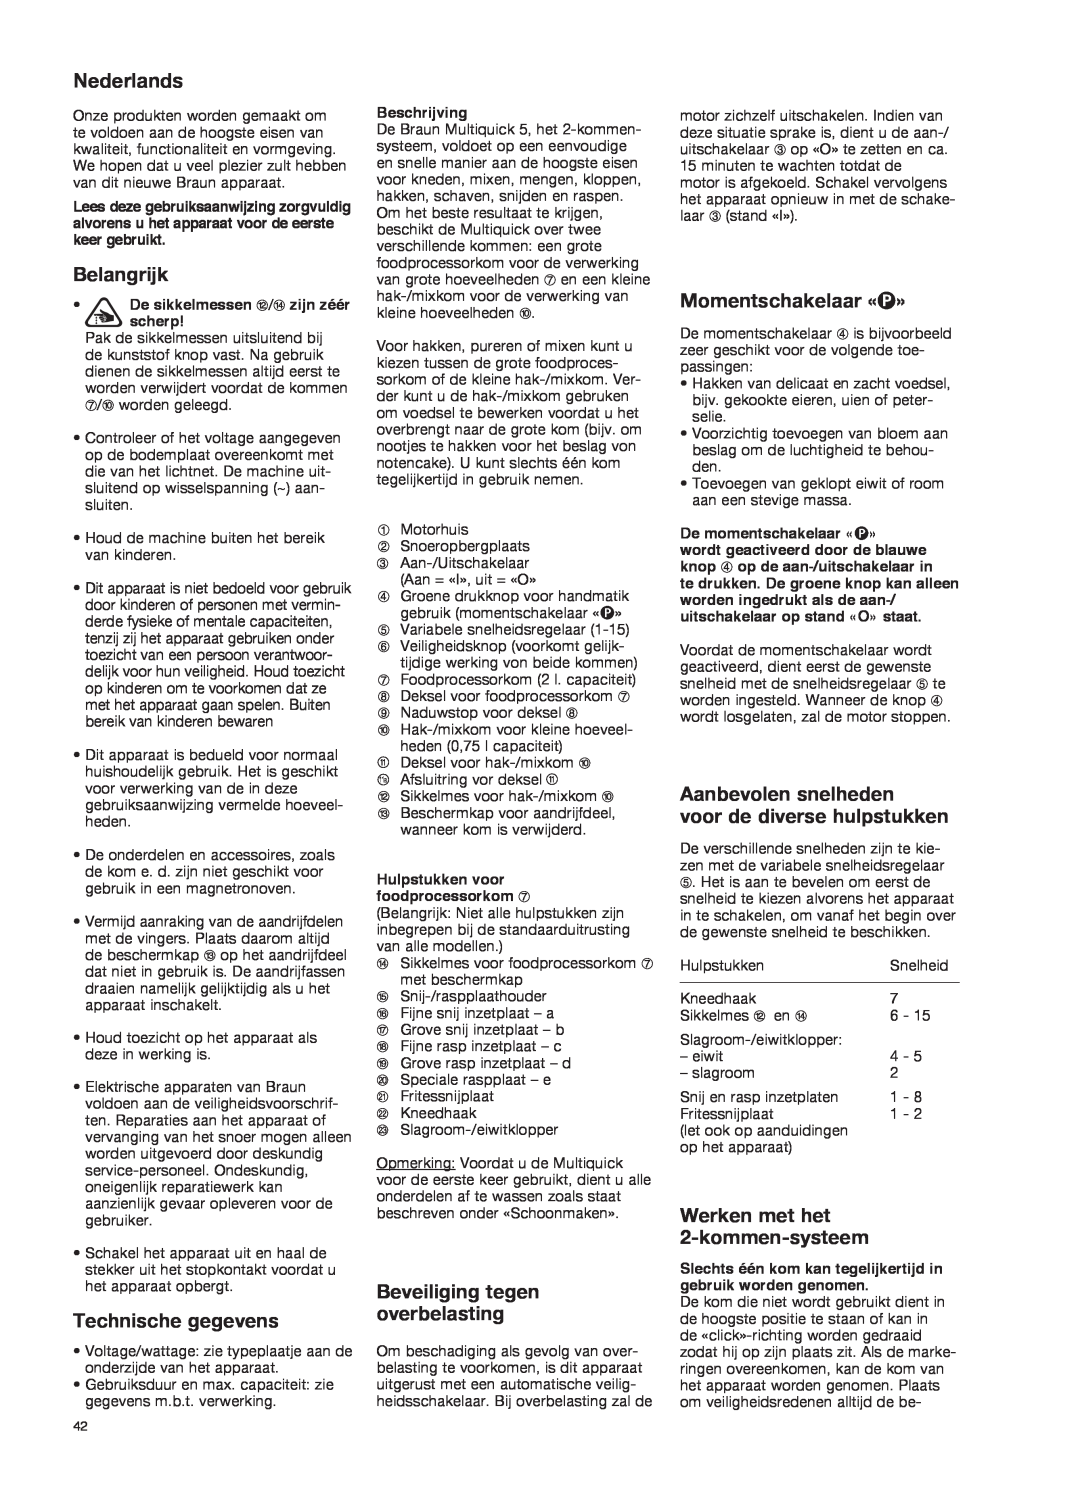 Braun K 700 black manual Nederlands, Belangrijk, Technische gegevens, Beveiliging tegen overbelasting, Momentschakelaar «P» 